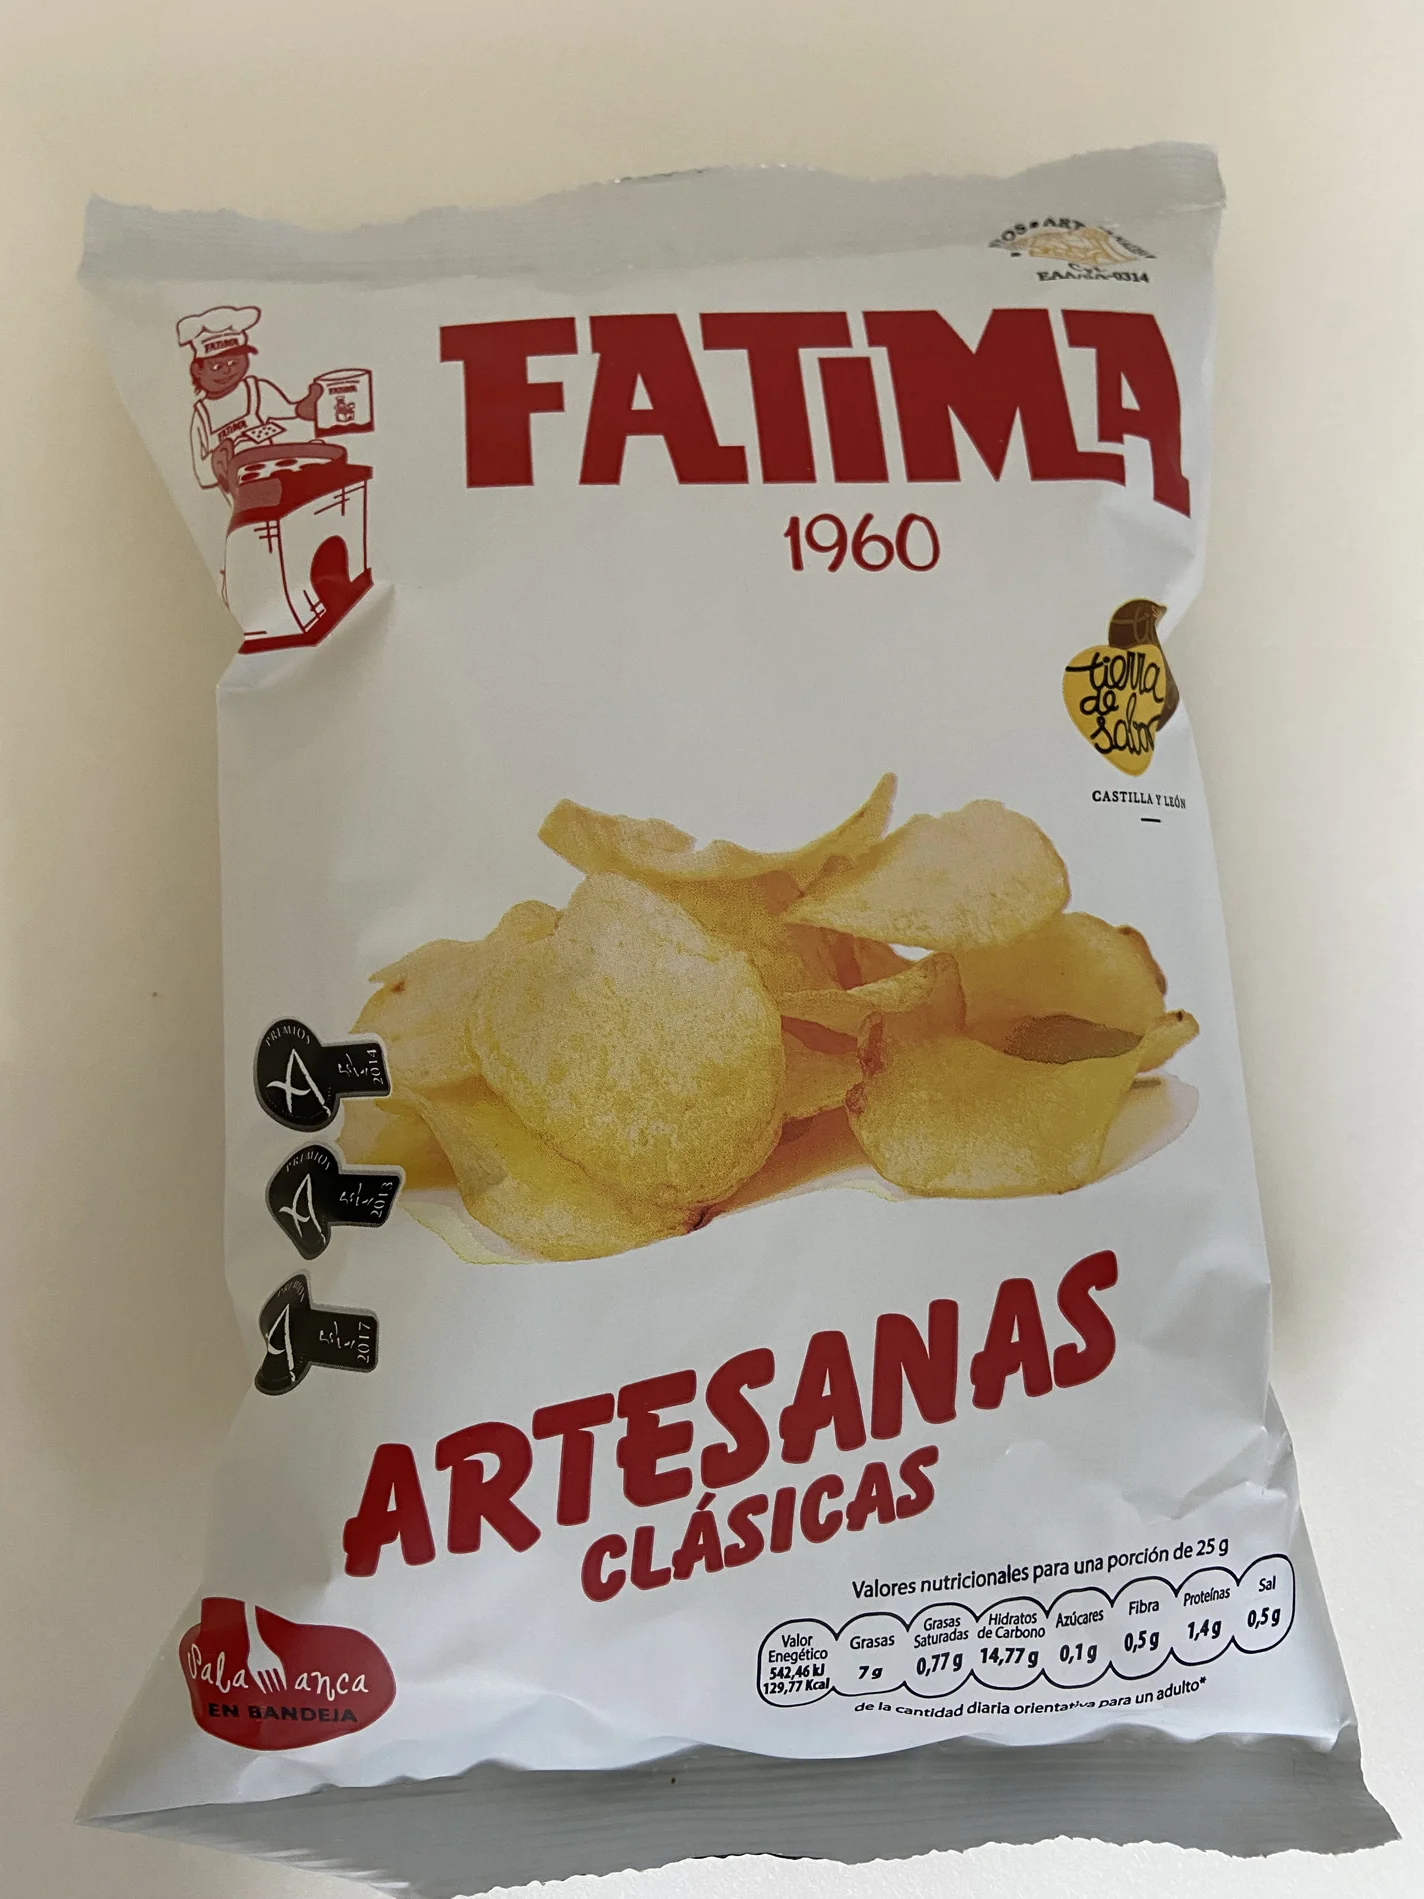 Patatas Fritas Fatima clasicas.webp